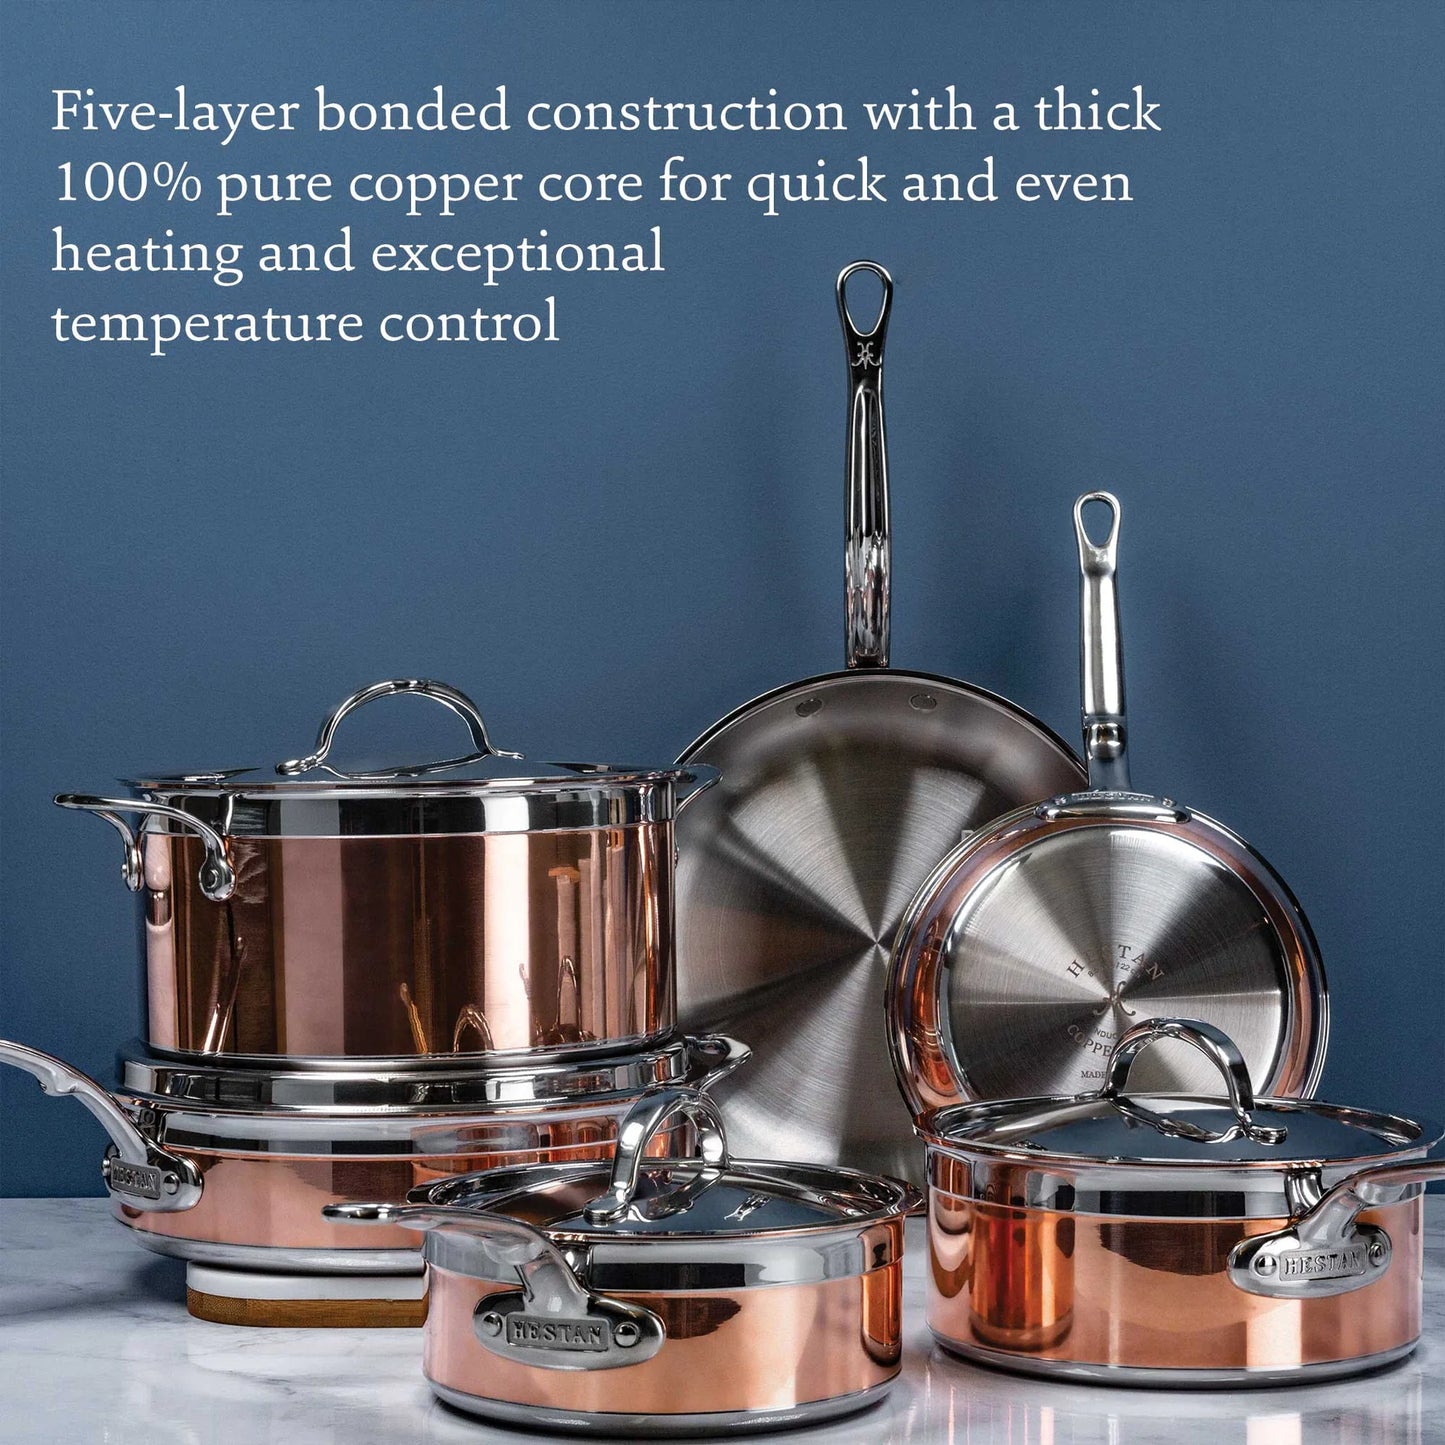 Hestan CopperBond Induction Soup Pot (3-Quart)